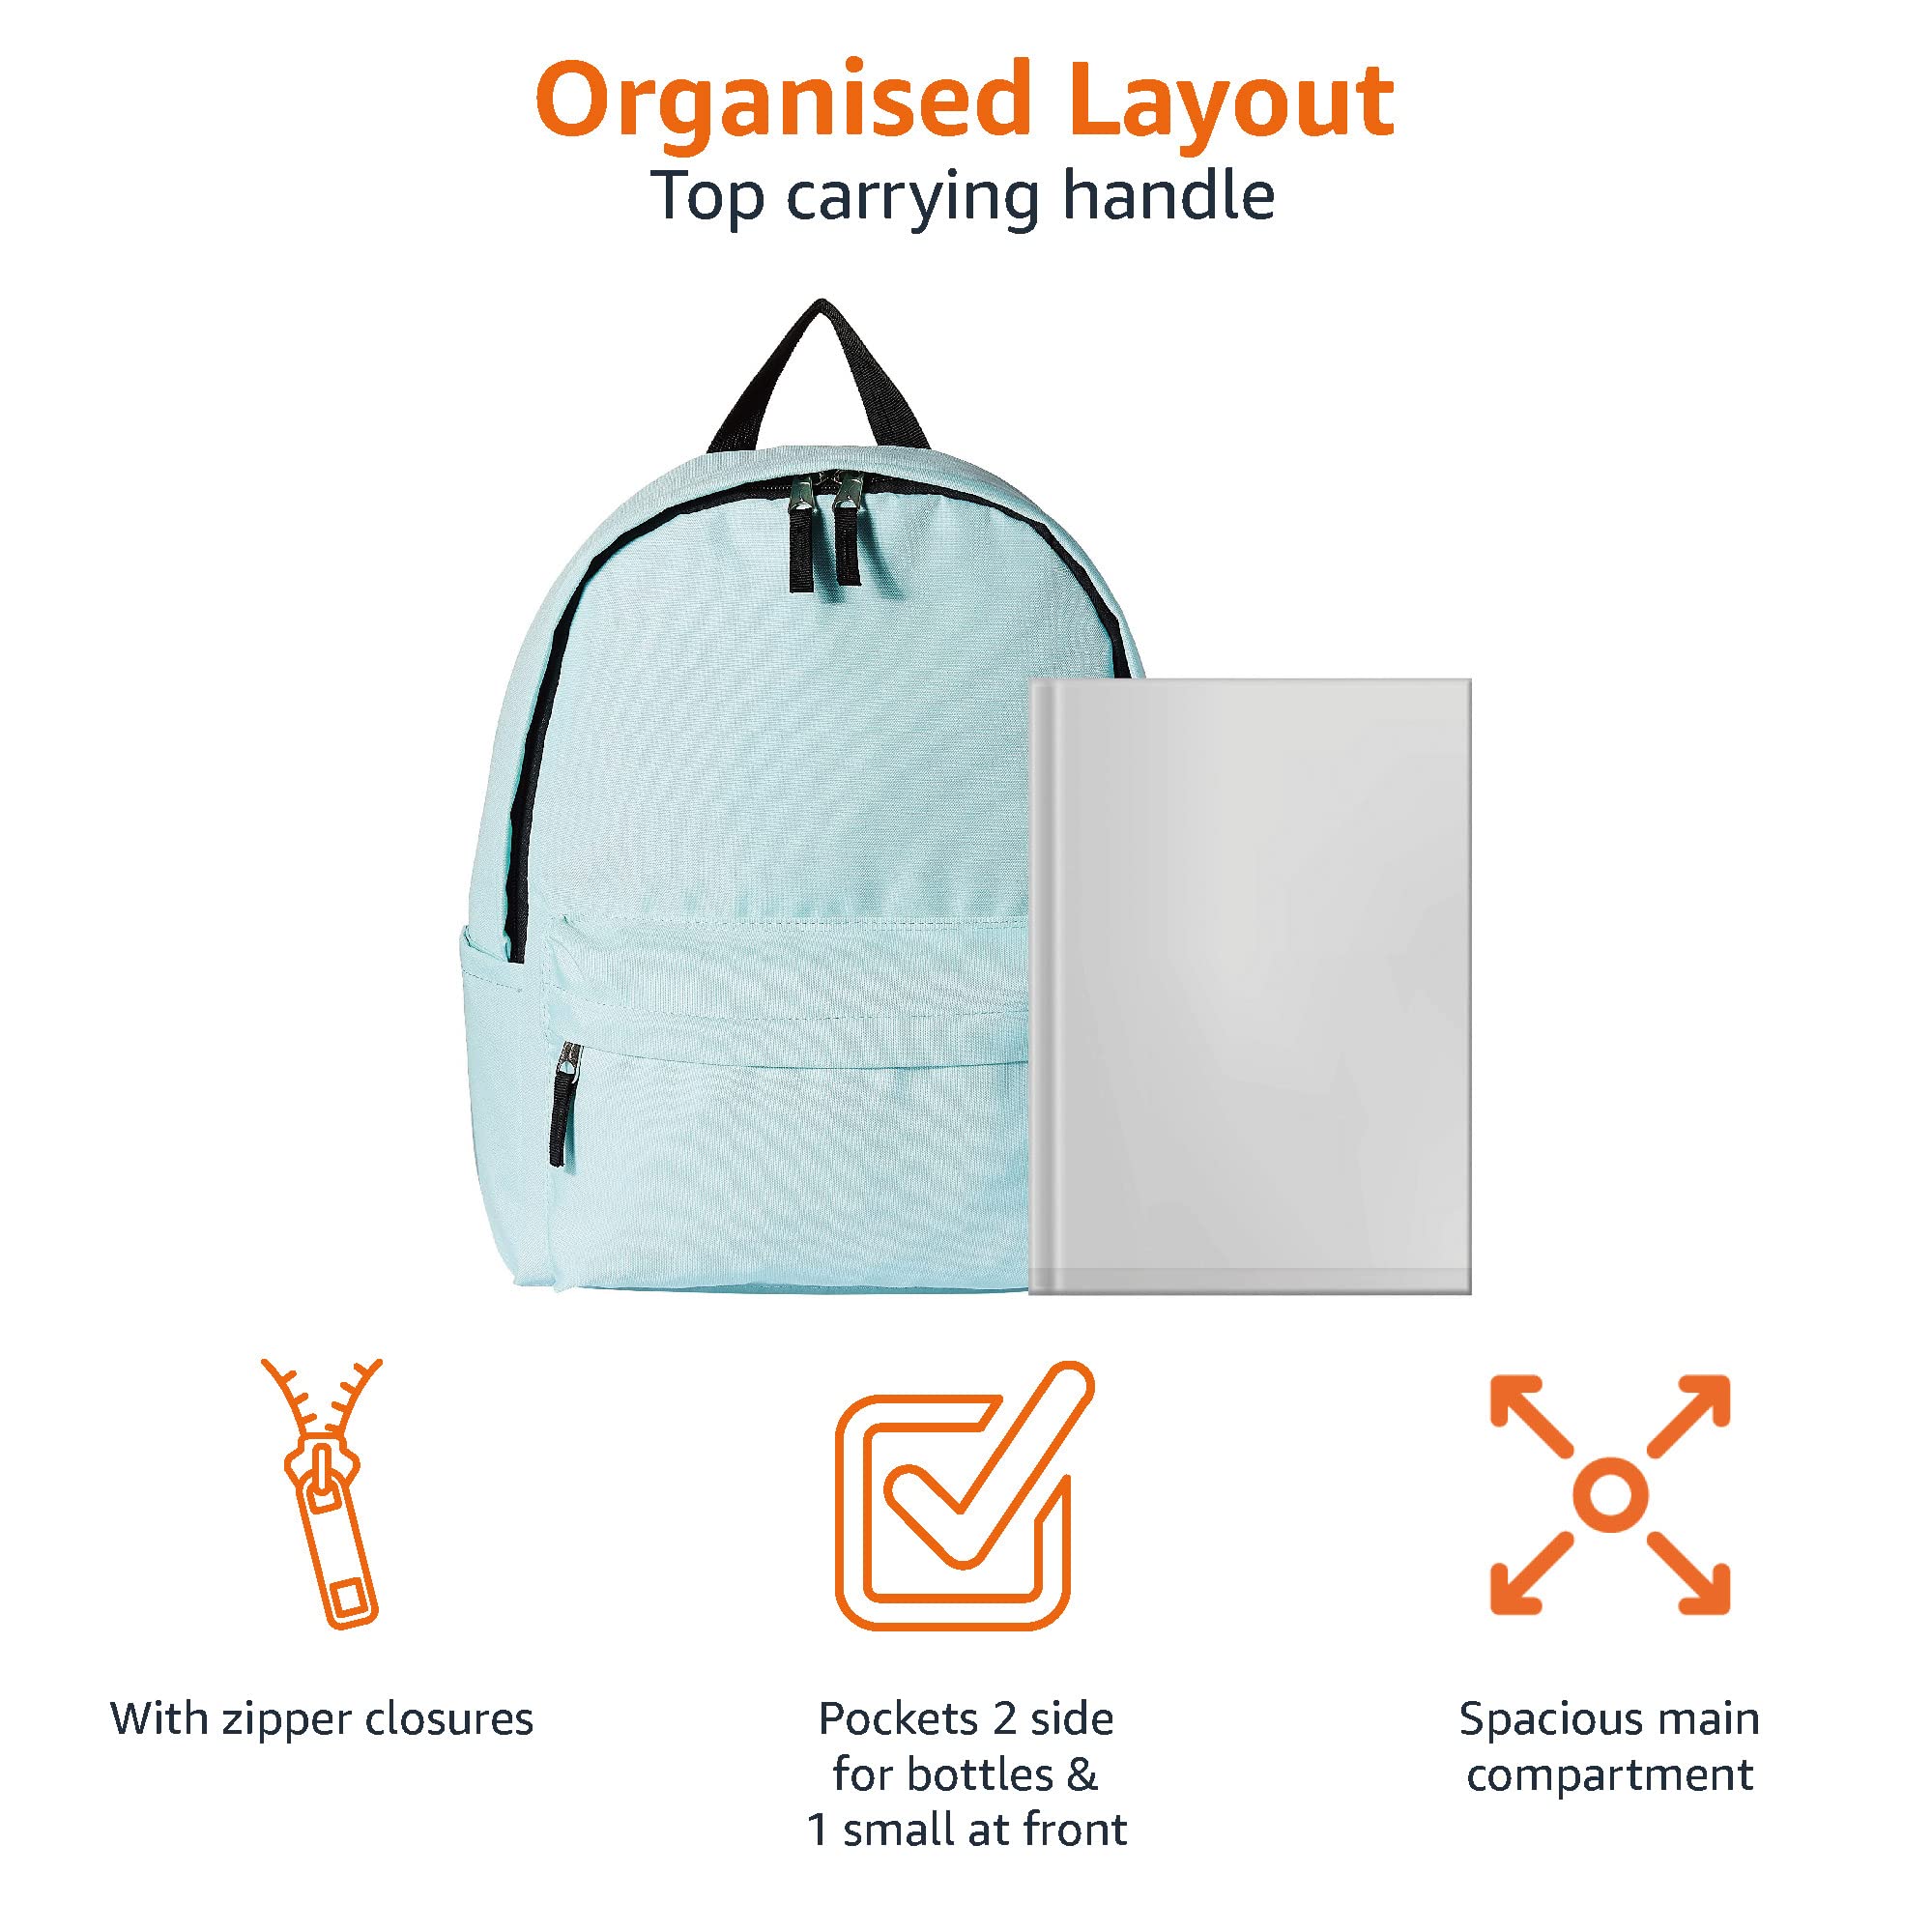 Amazon Basics Classic School Backpack - Aqua